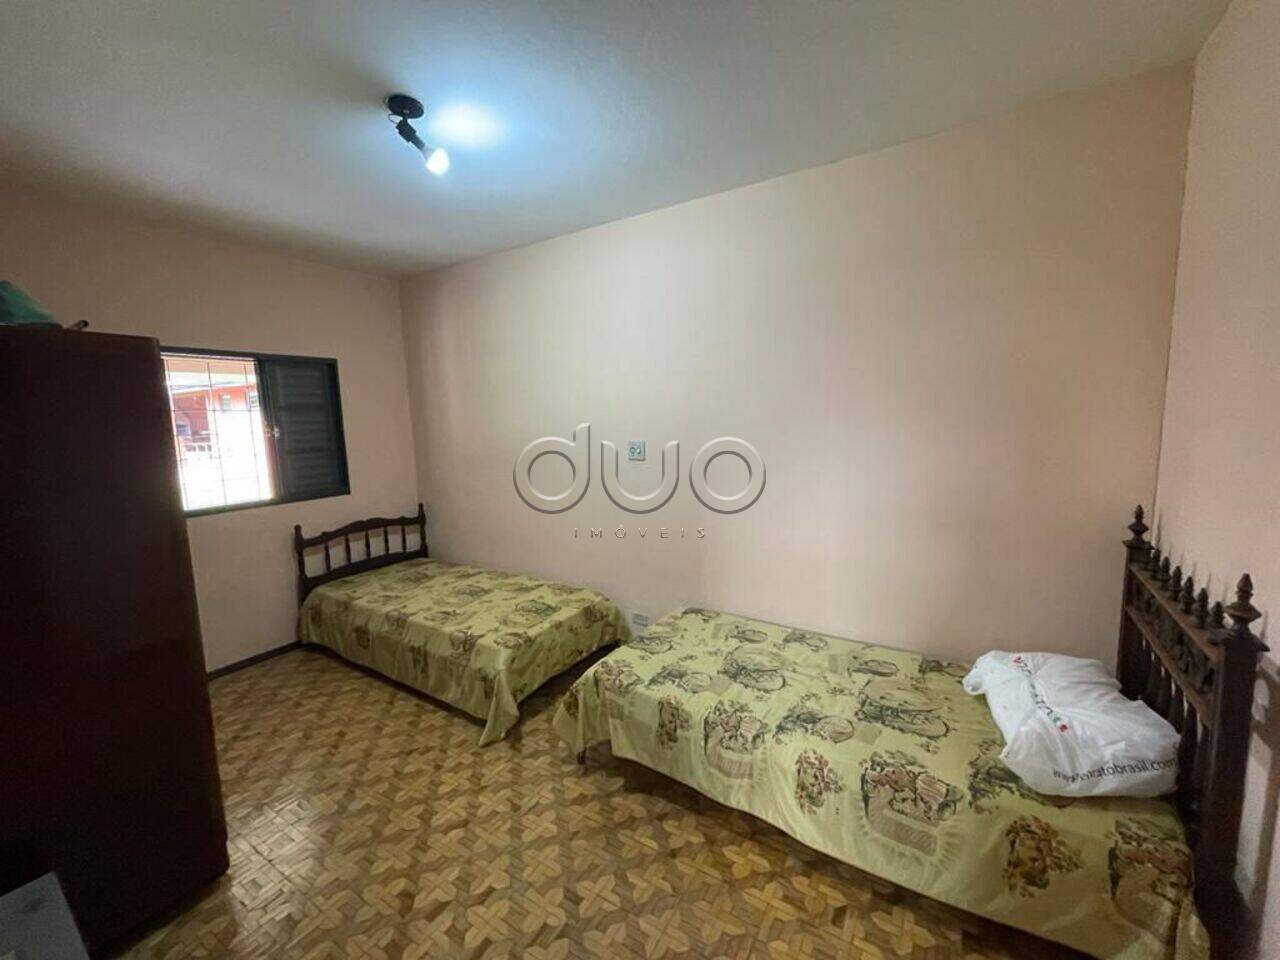 Chácara com 3 dormitórios à venda, 1043 m² por R$ 800.000 - Unileste - Piracicaba/SP